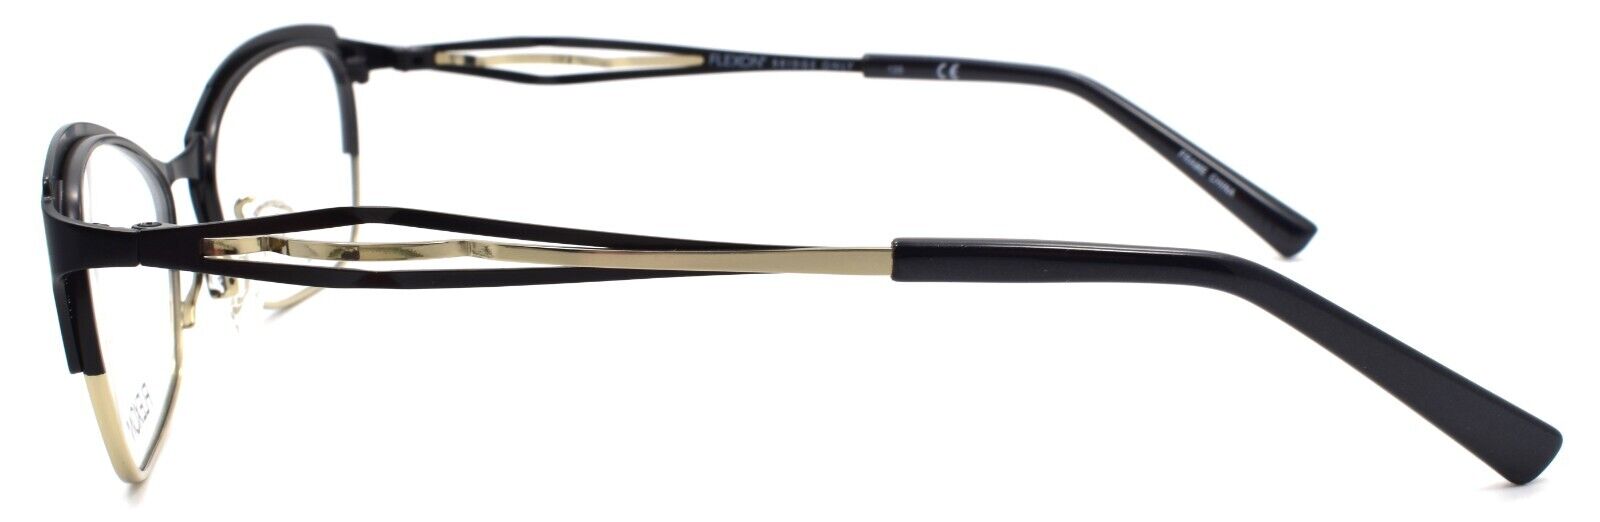 3-Flexon W3000 001 Women's Eyeglasses Frames Black 51-17-135 Titanium Bridge-883900202817-IKSpecs